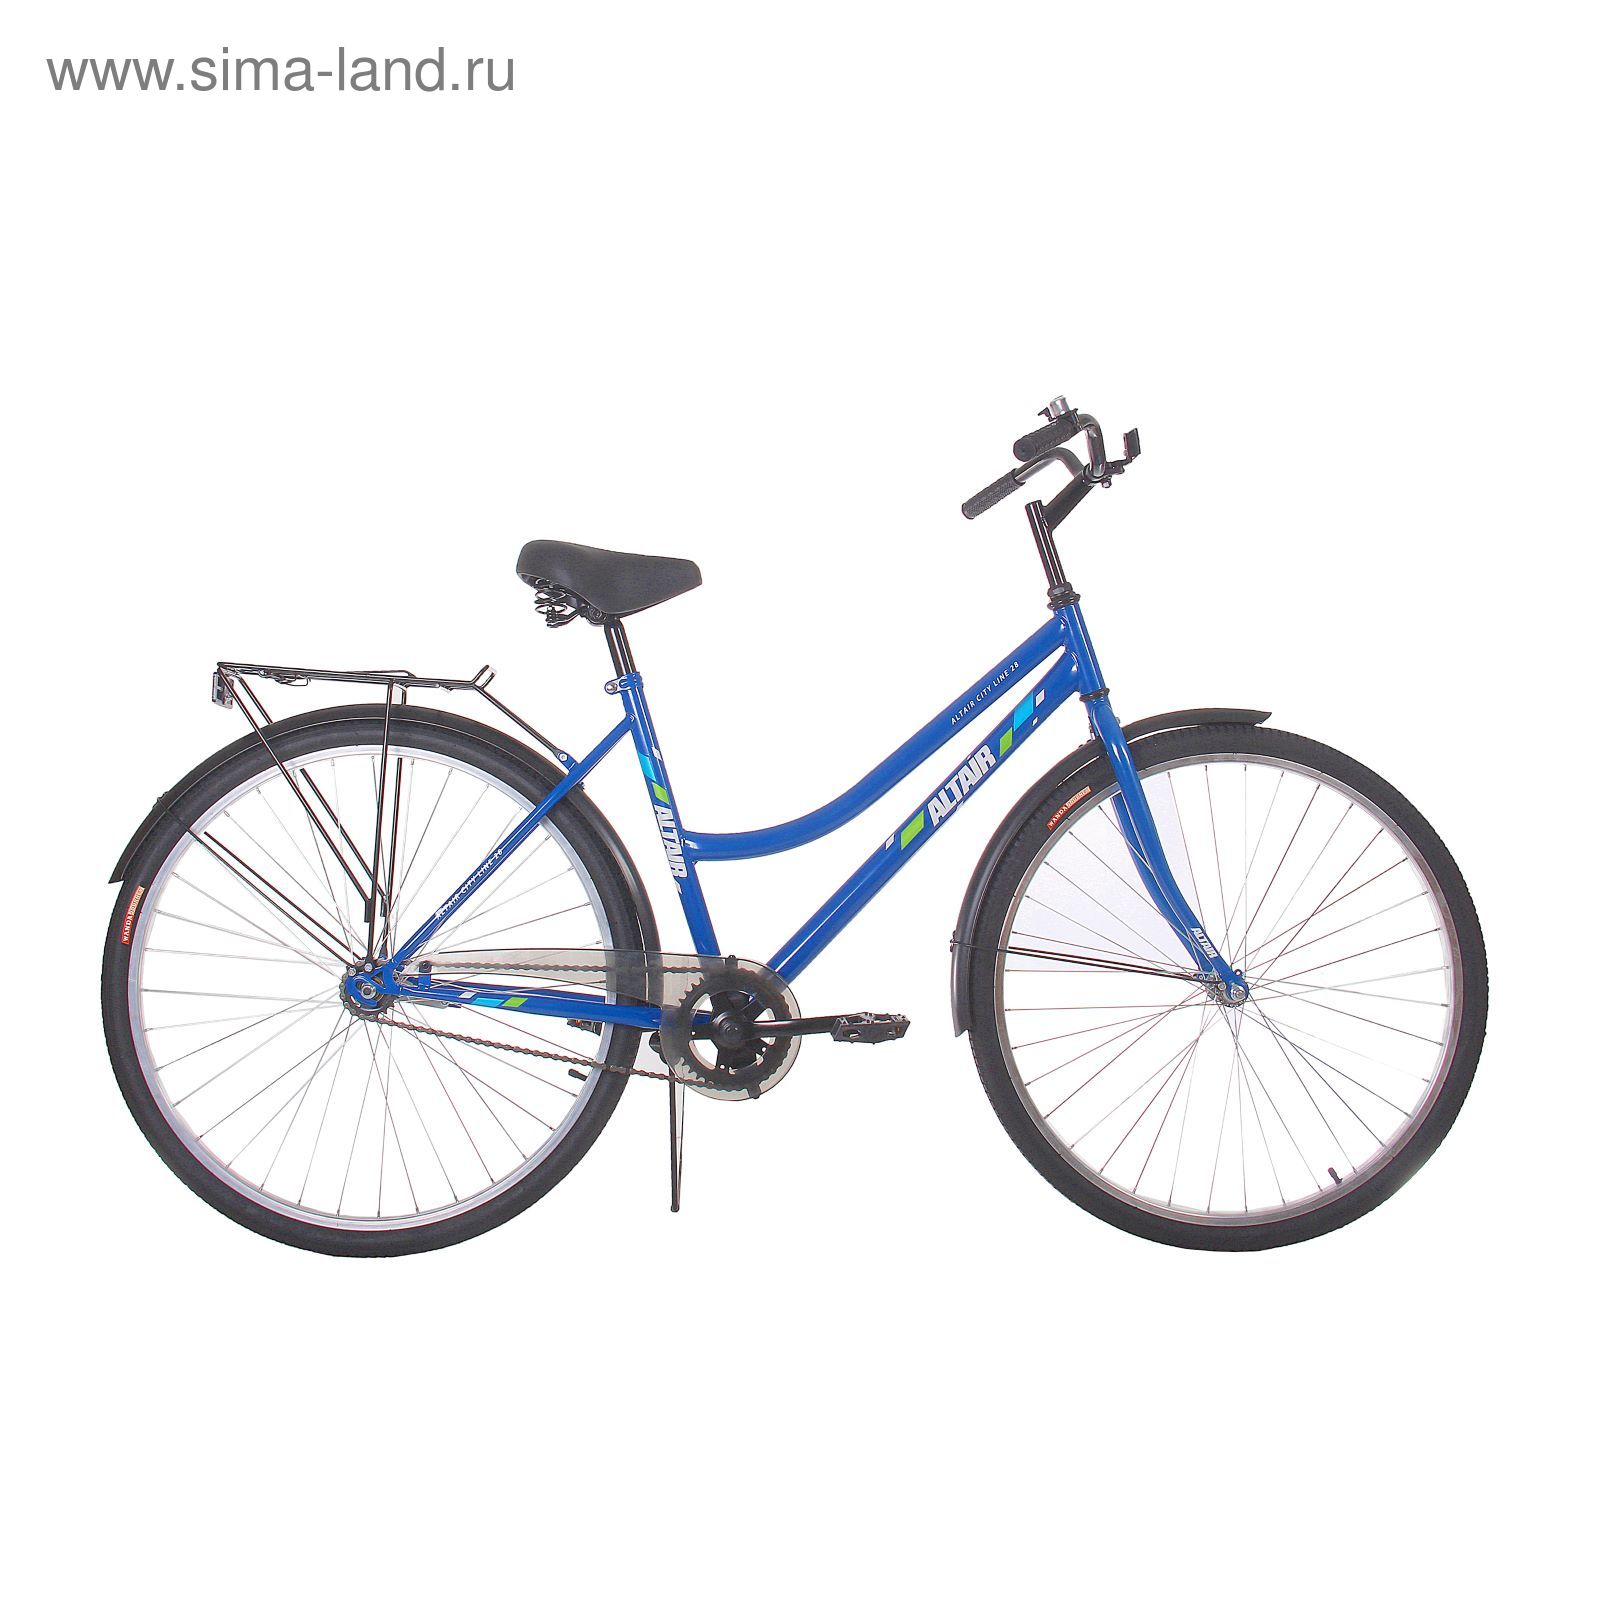 Велосипед 28" Altair City Low 28, 2017, цвет синий, размер 19"